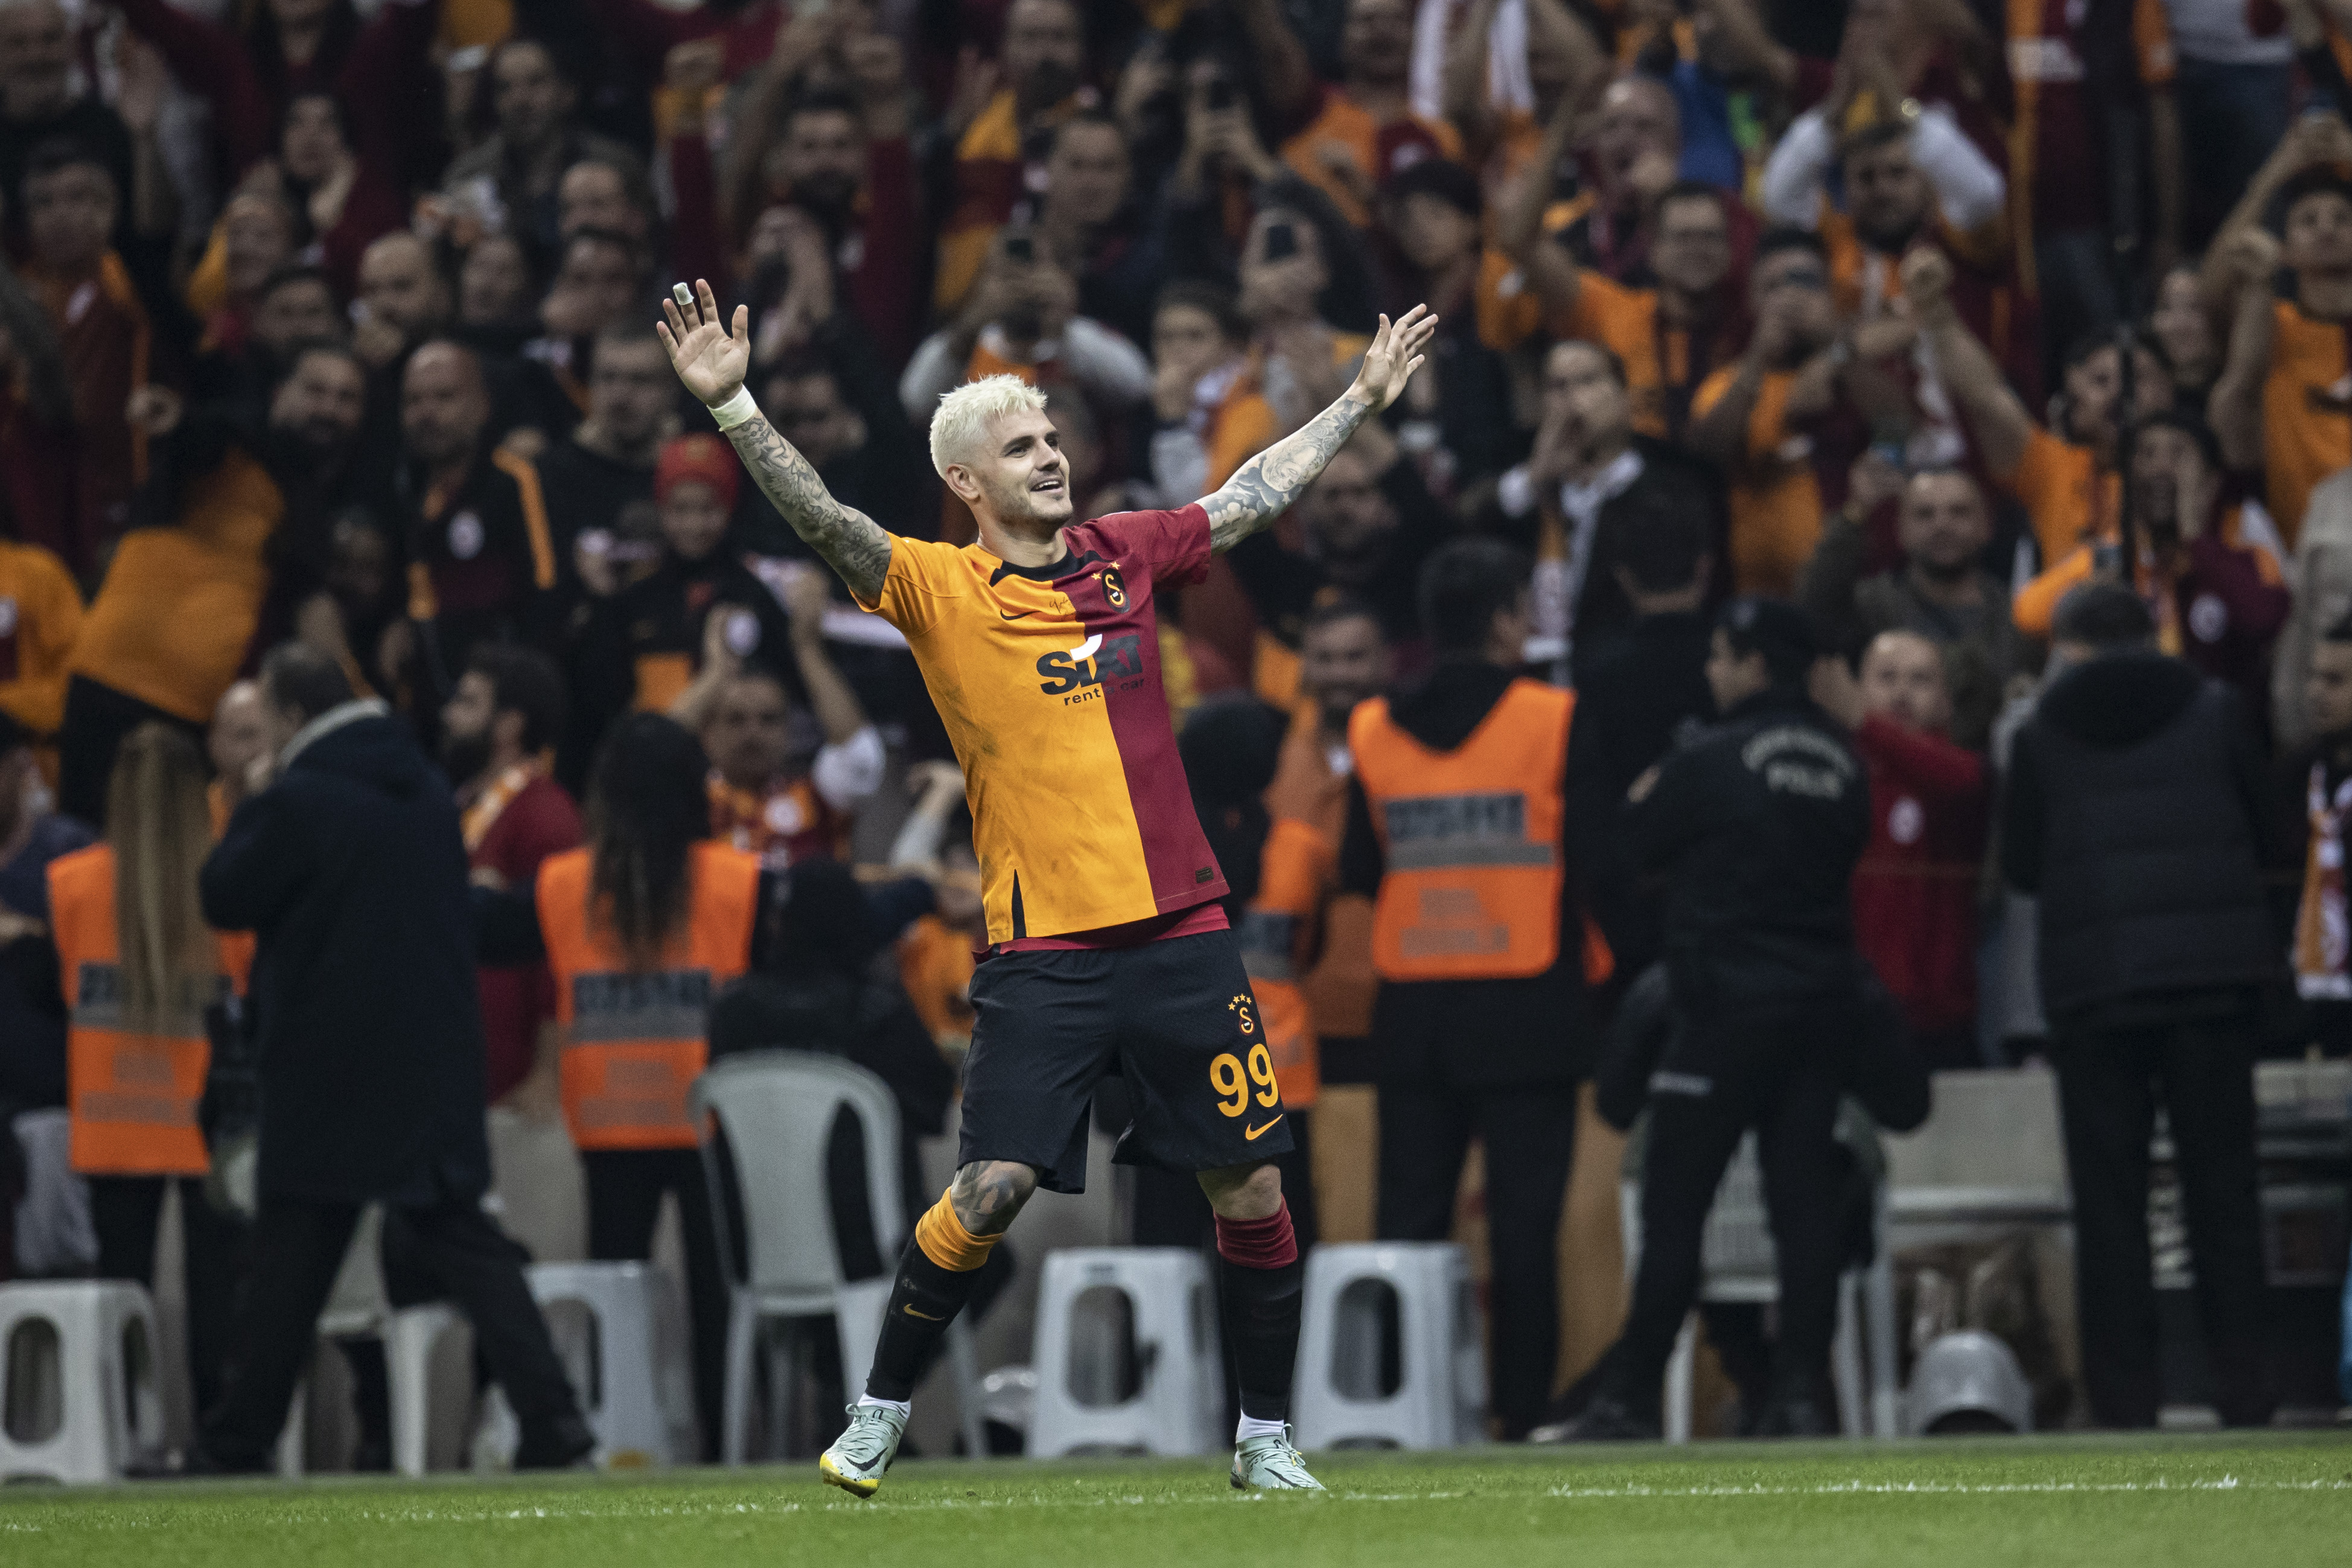 Beşiktaş - Galatasaray  CANLI - Son dakika Beşiktaş haberleri - Fotomaç